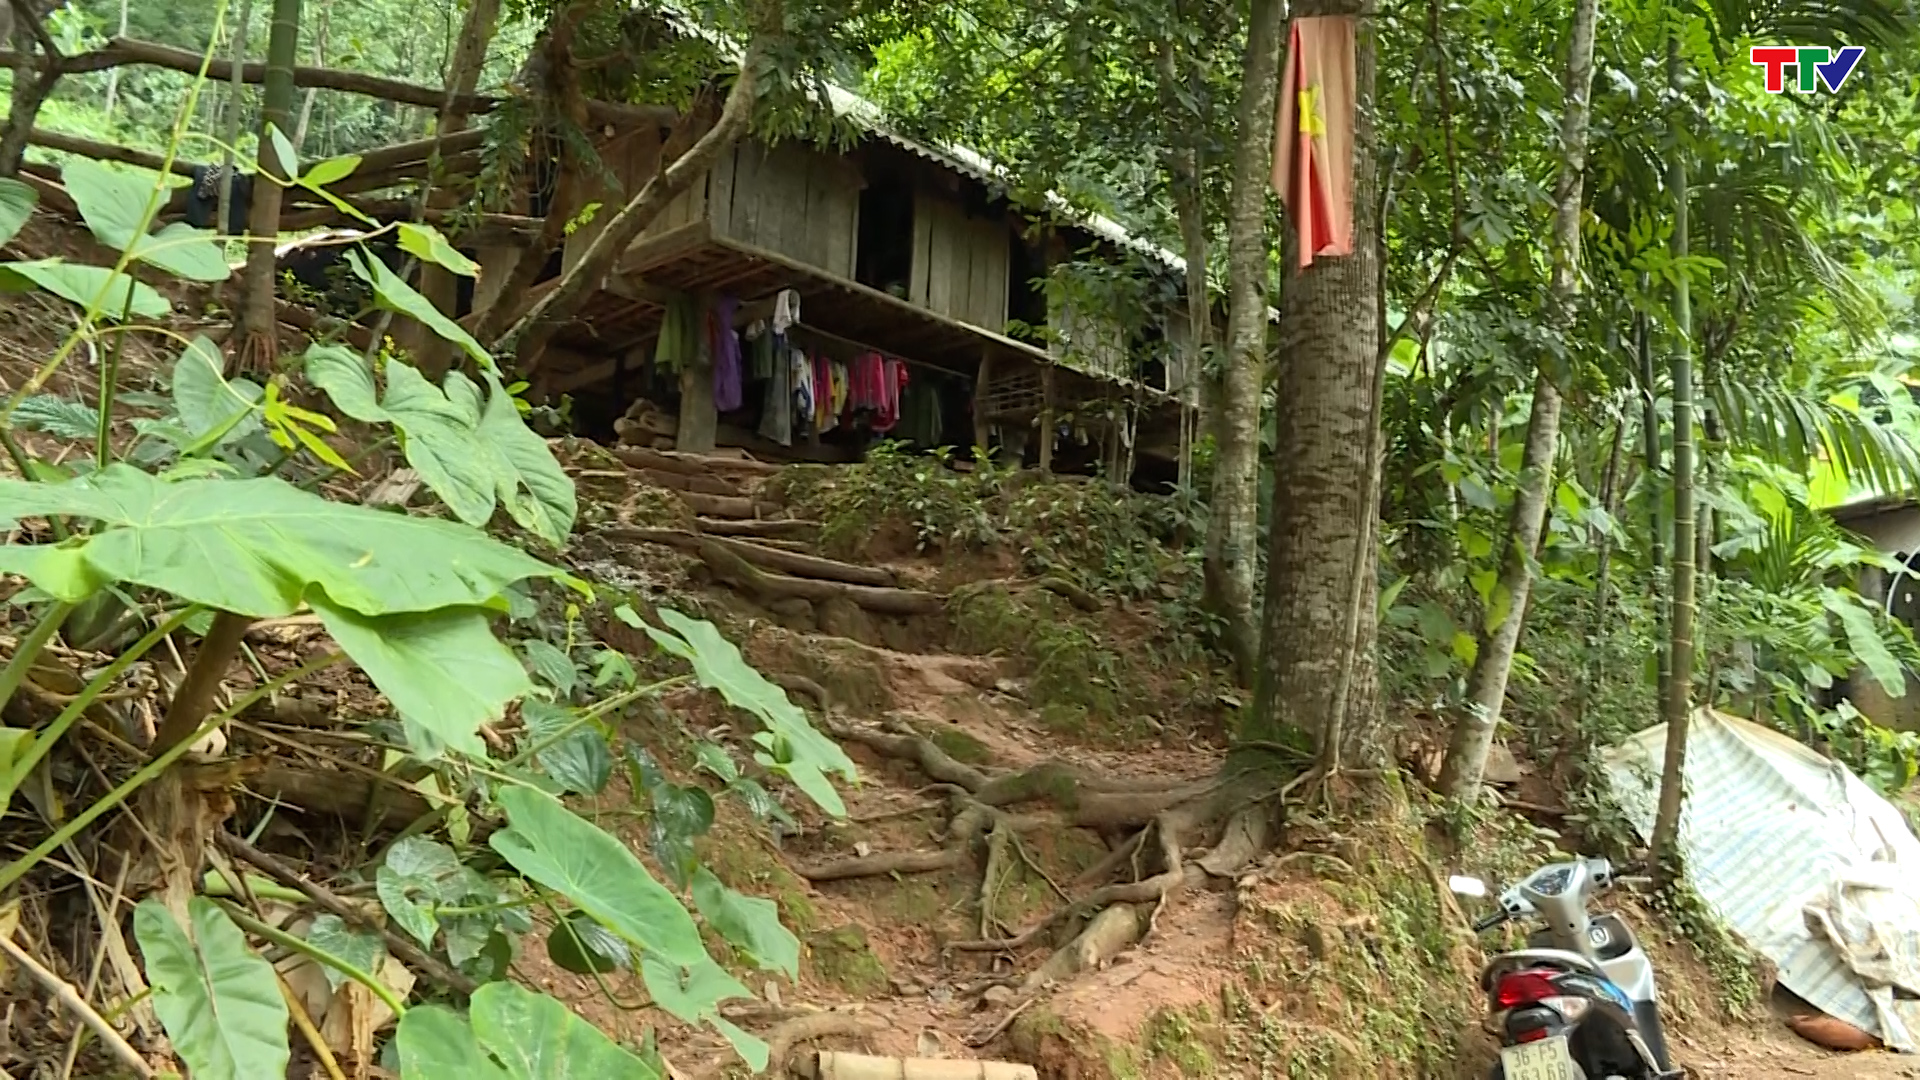 Nhiều hộ dân ở huyện Bá Thước sống trong vùng dễ xảy ra lũ quét, sạt lở đất - Ảnh 2.